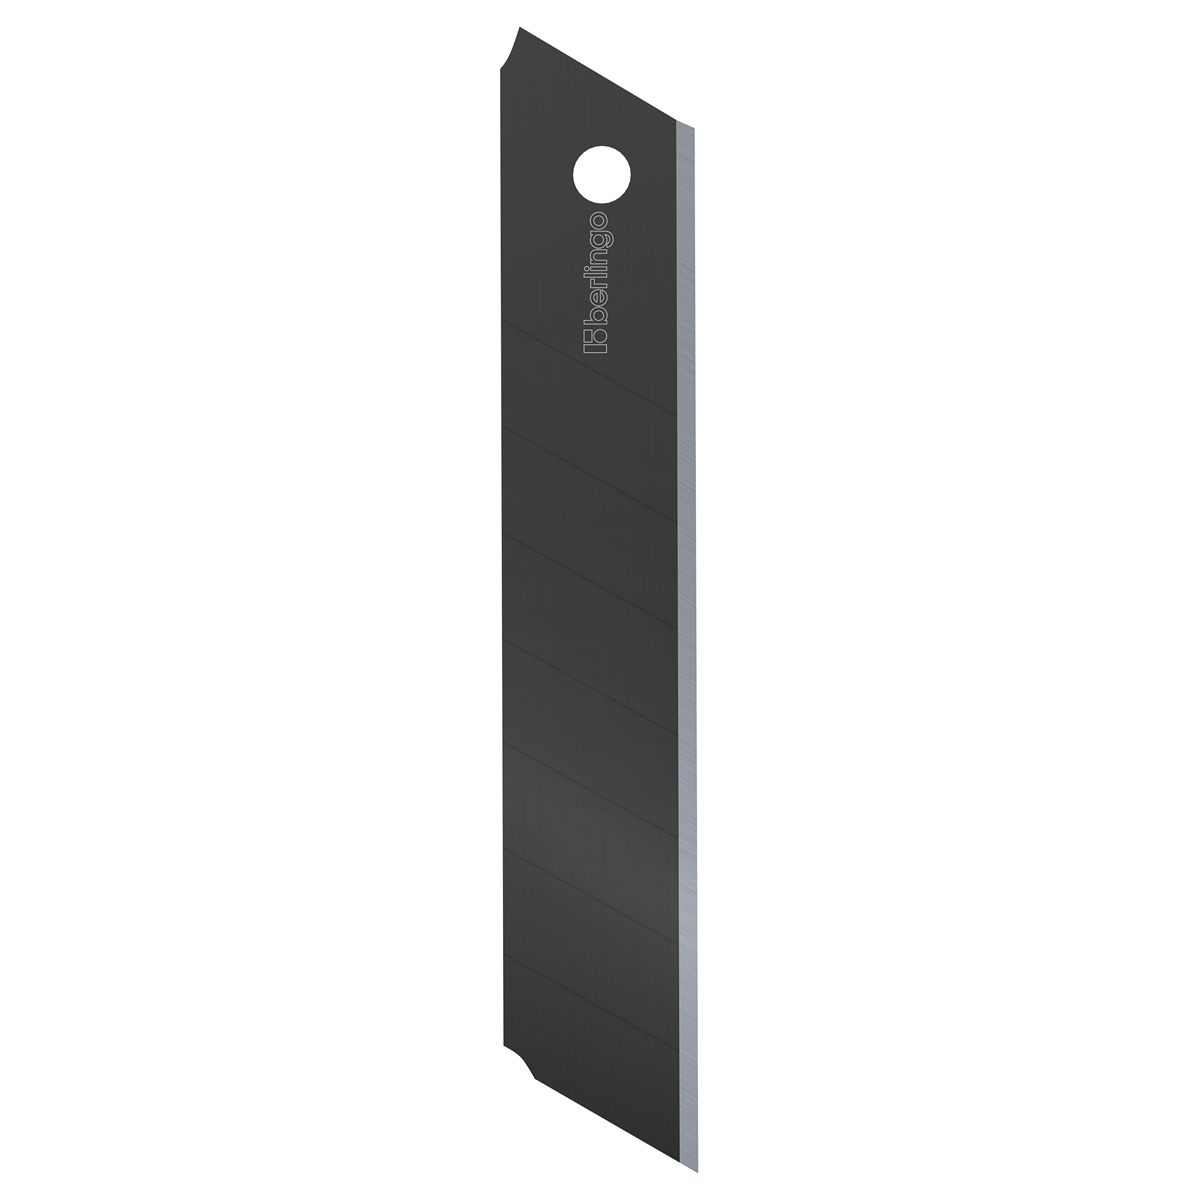 Лезвия для канцелярских ножей Berlingo, 18 мм, 5 шт., черный цвет, в пластиковом пенале Brg-BM4217 - фото 2